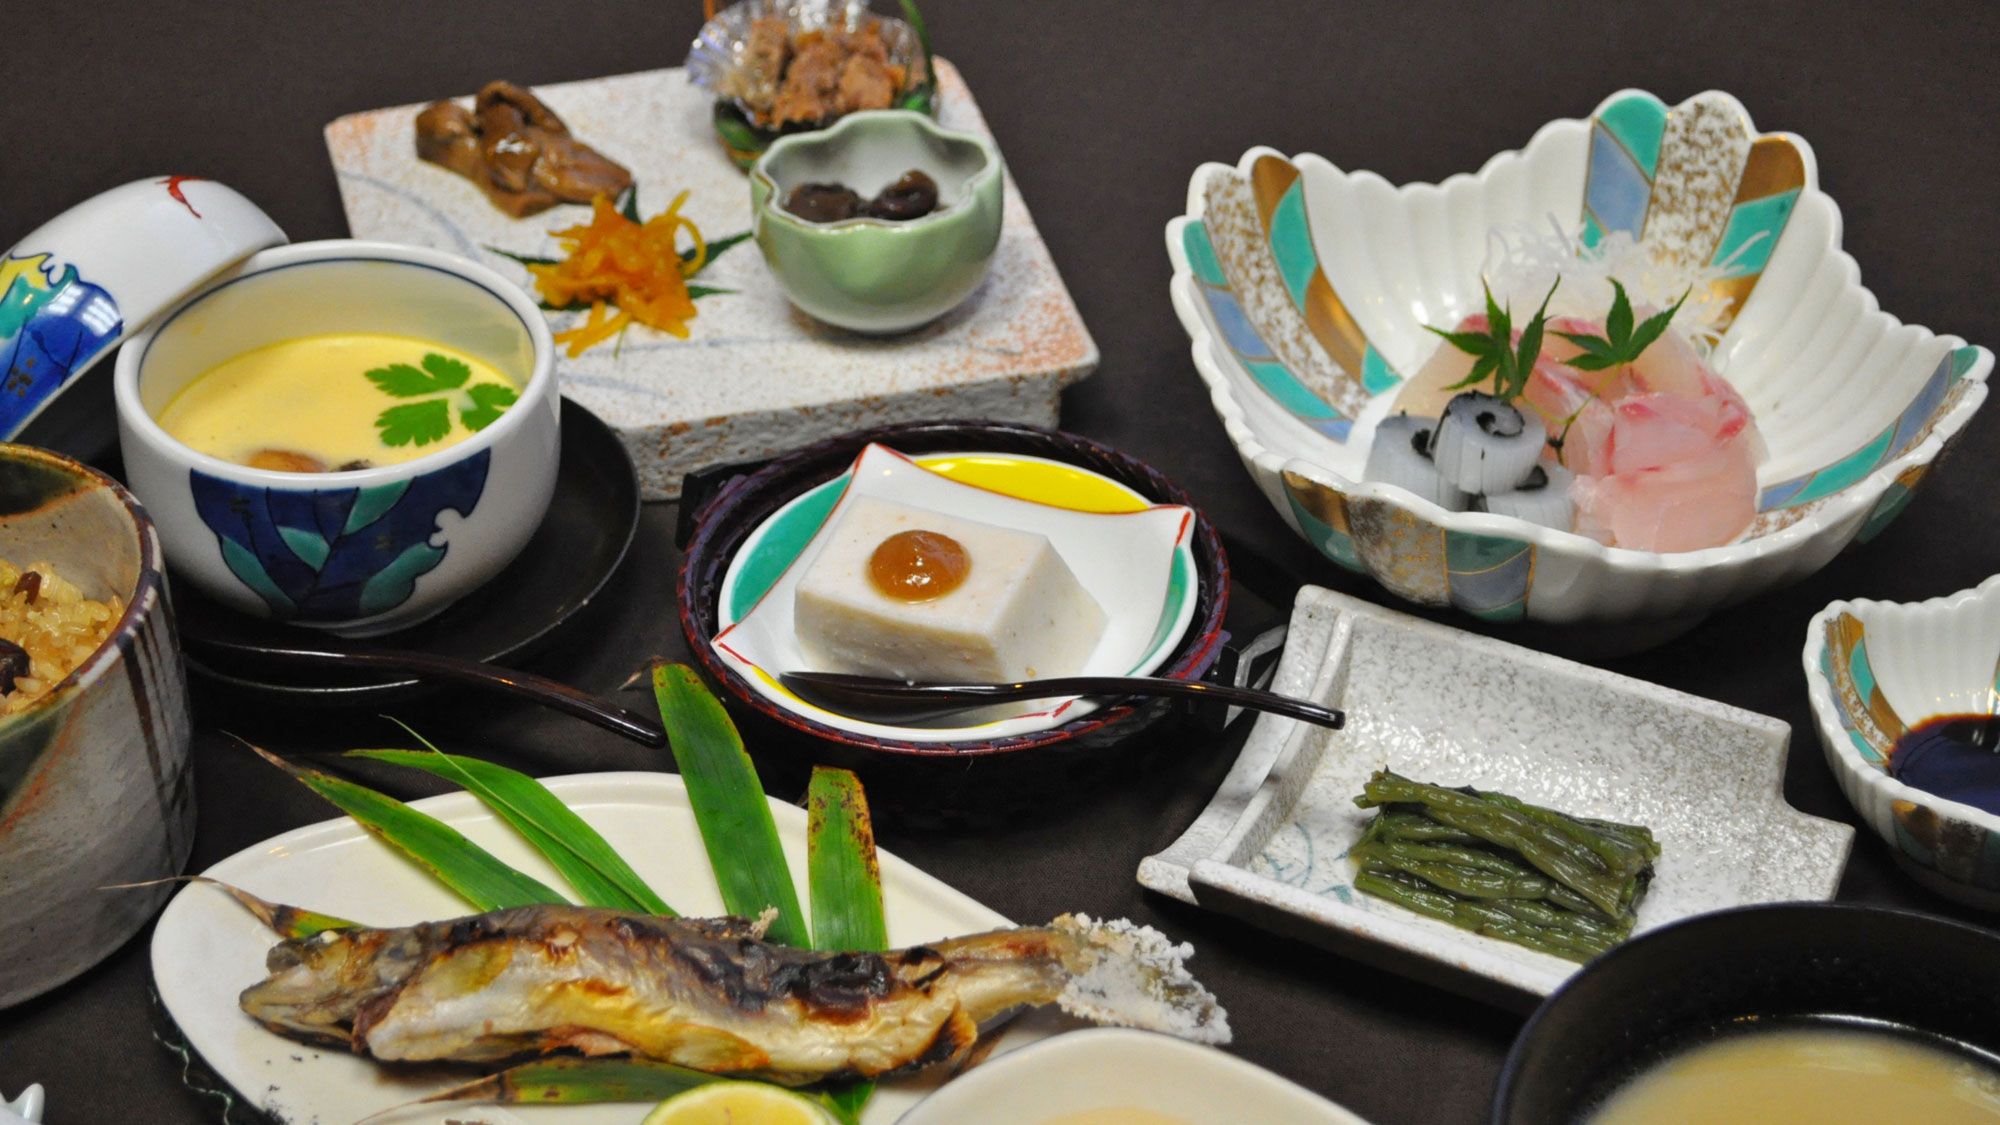 【グレードアップ夕食】四季折々の山菜・清流の魚など、こだわり素材の絶品夕食。